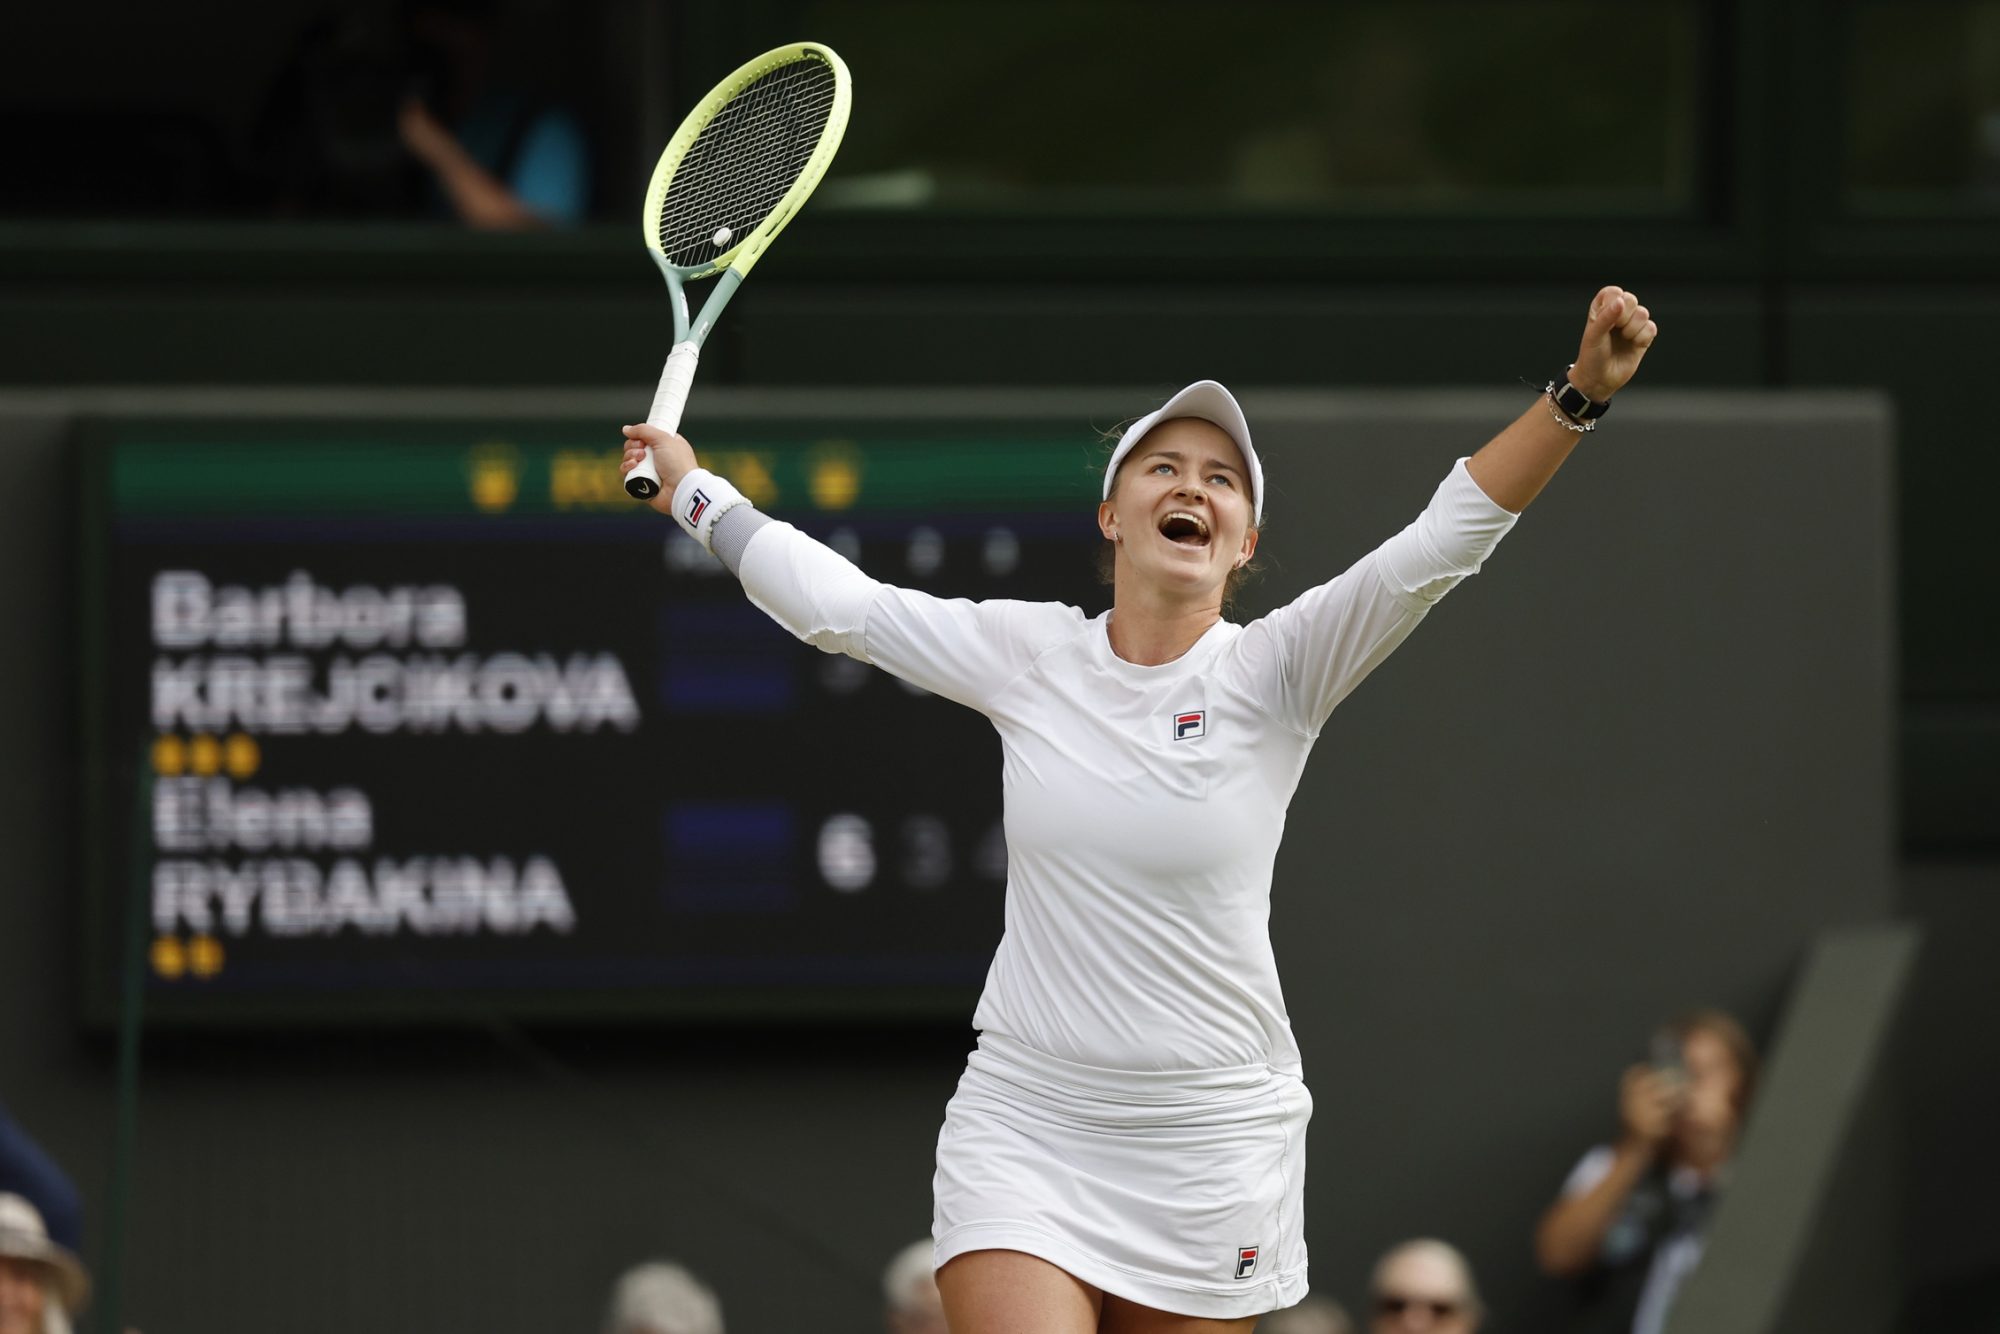 Krejčíková Wins Wimbledon and .45 Million First-Place Prize